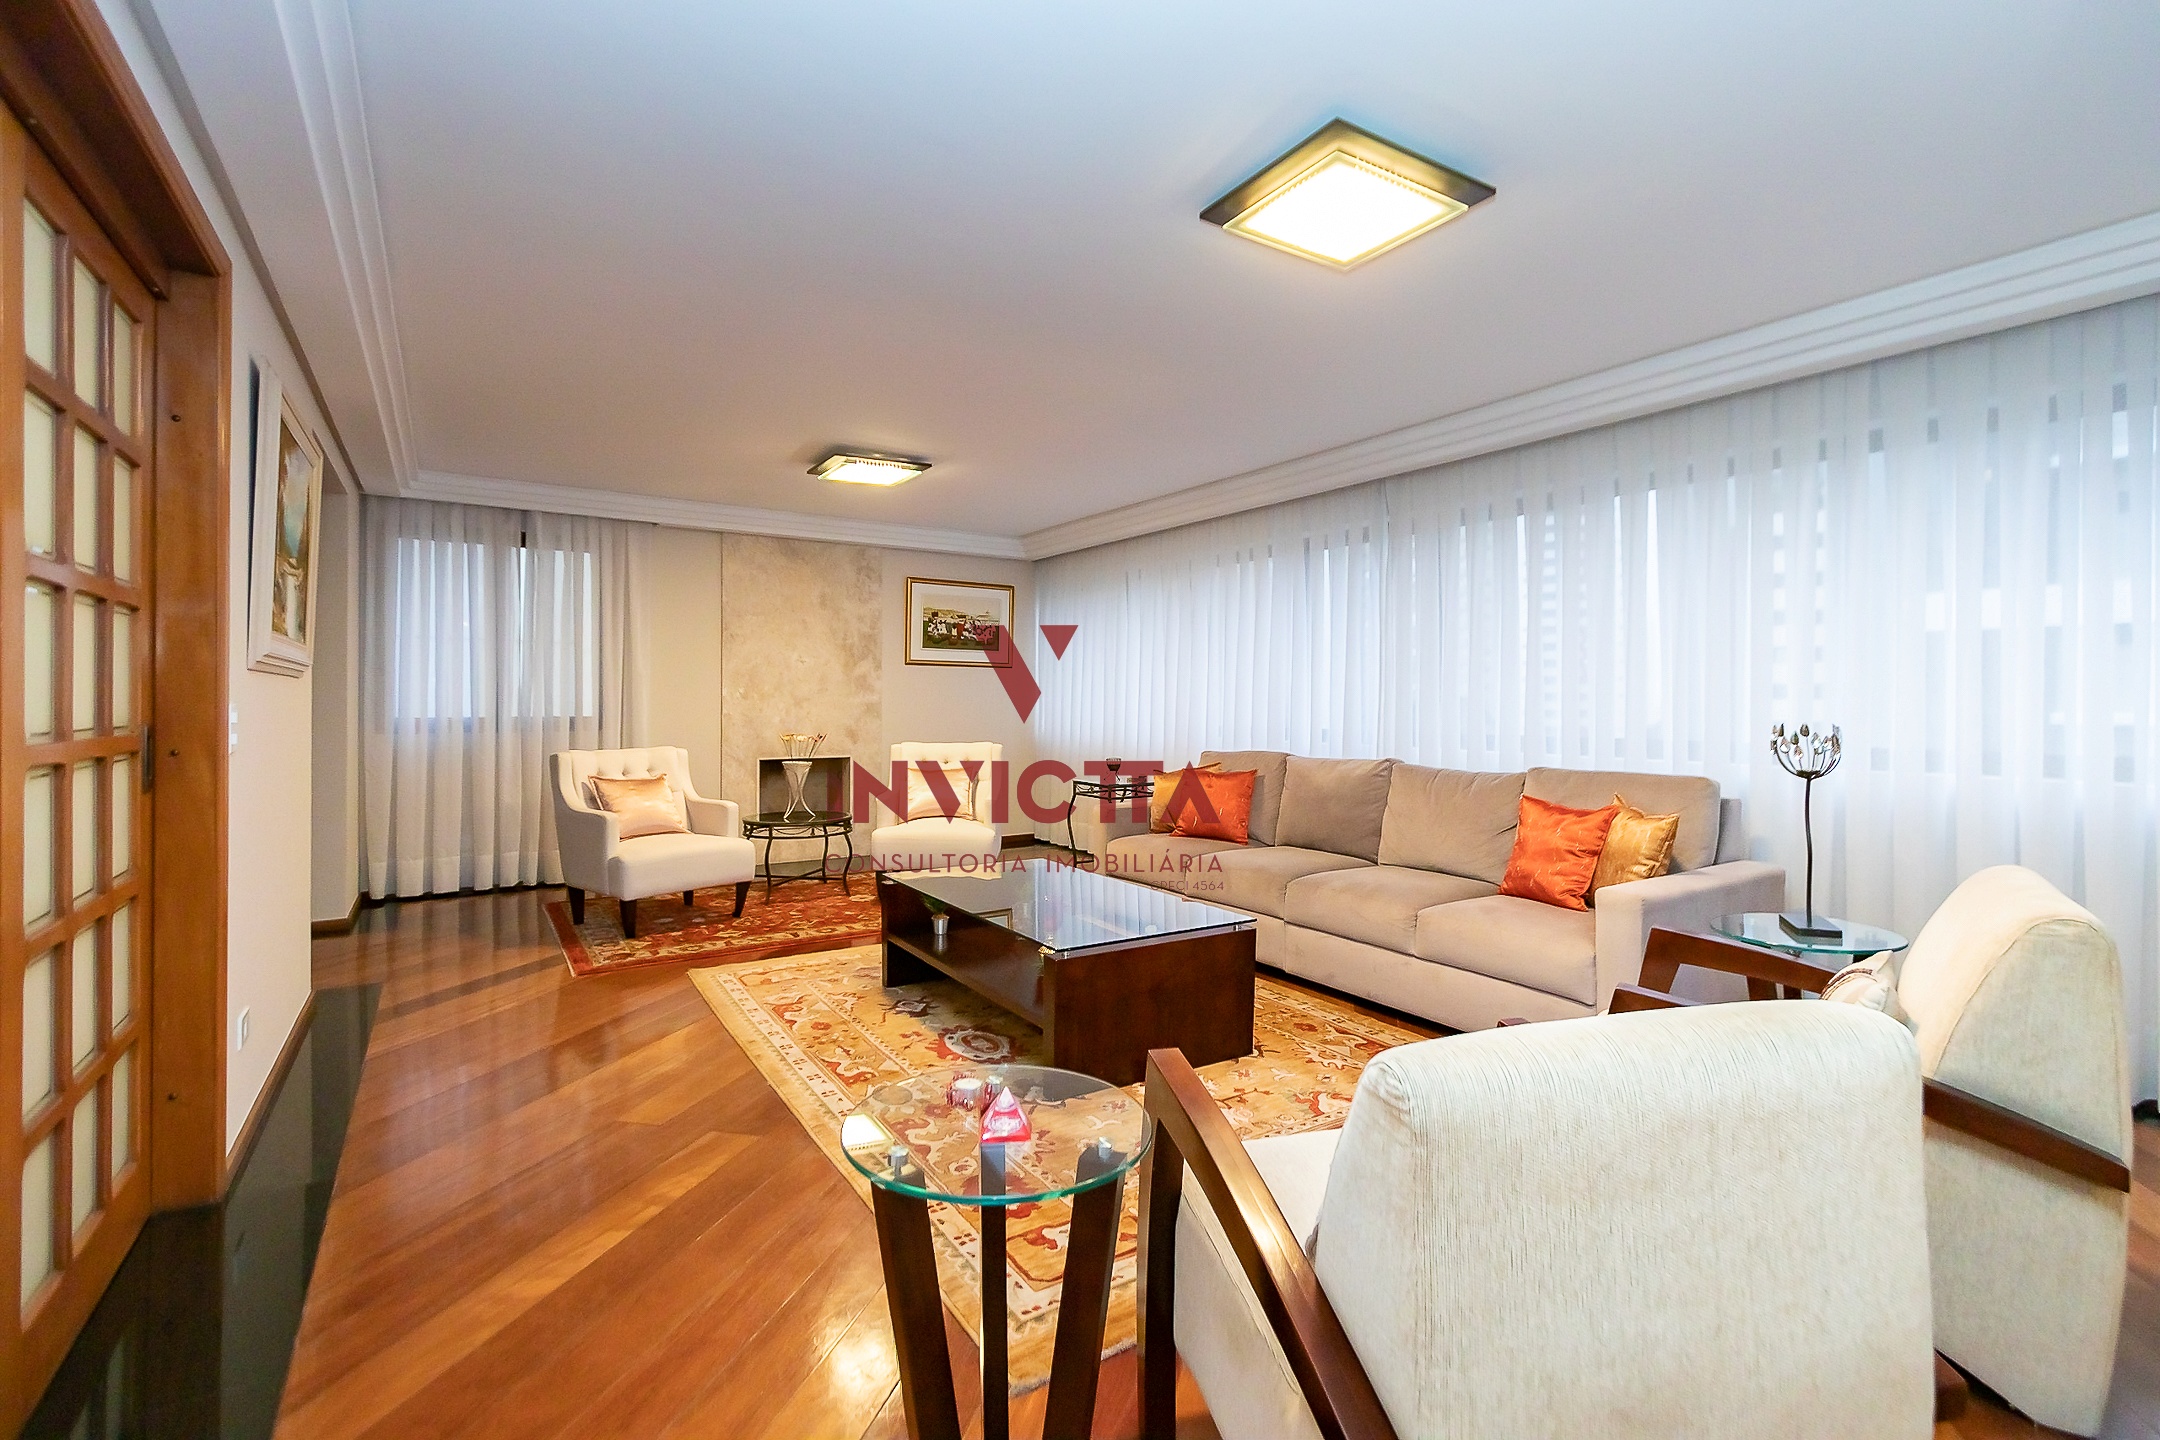 foto 4 do imóvel: apartamento a venda em Curitiba referência: AA 1713